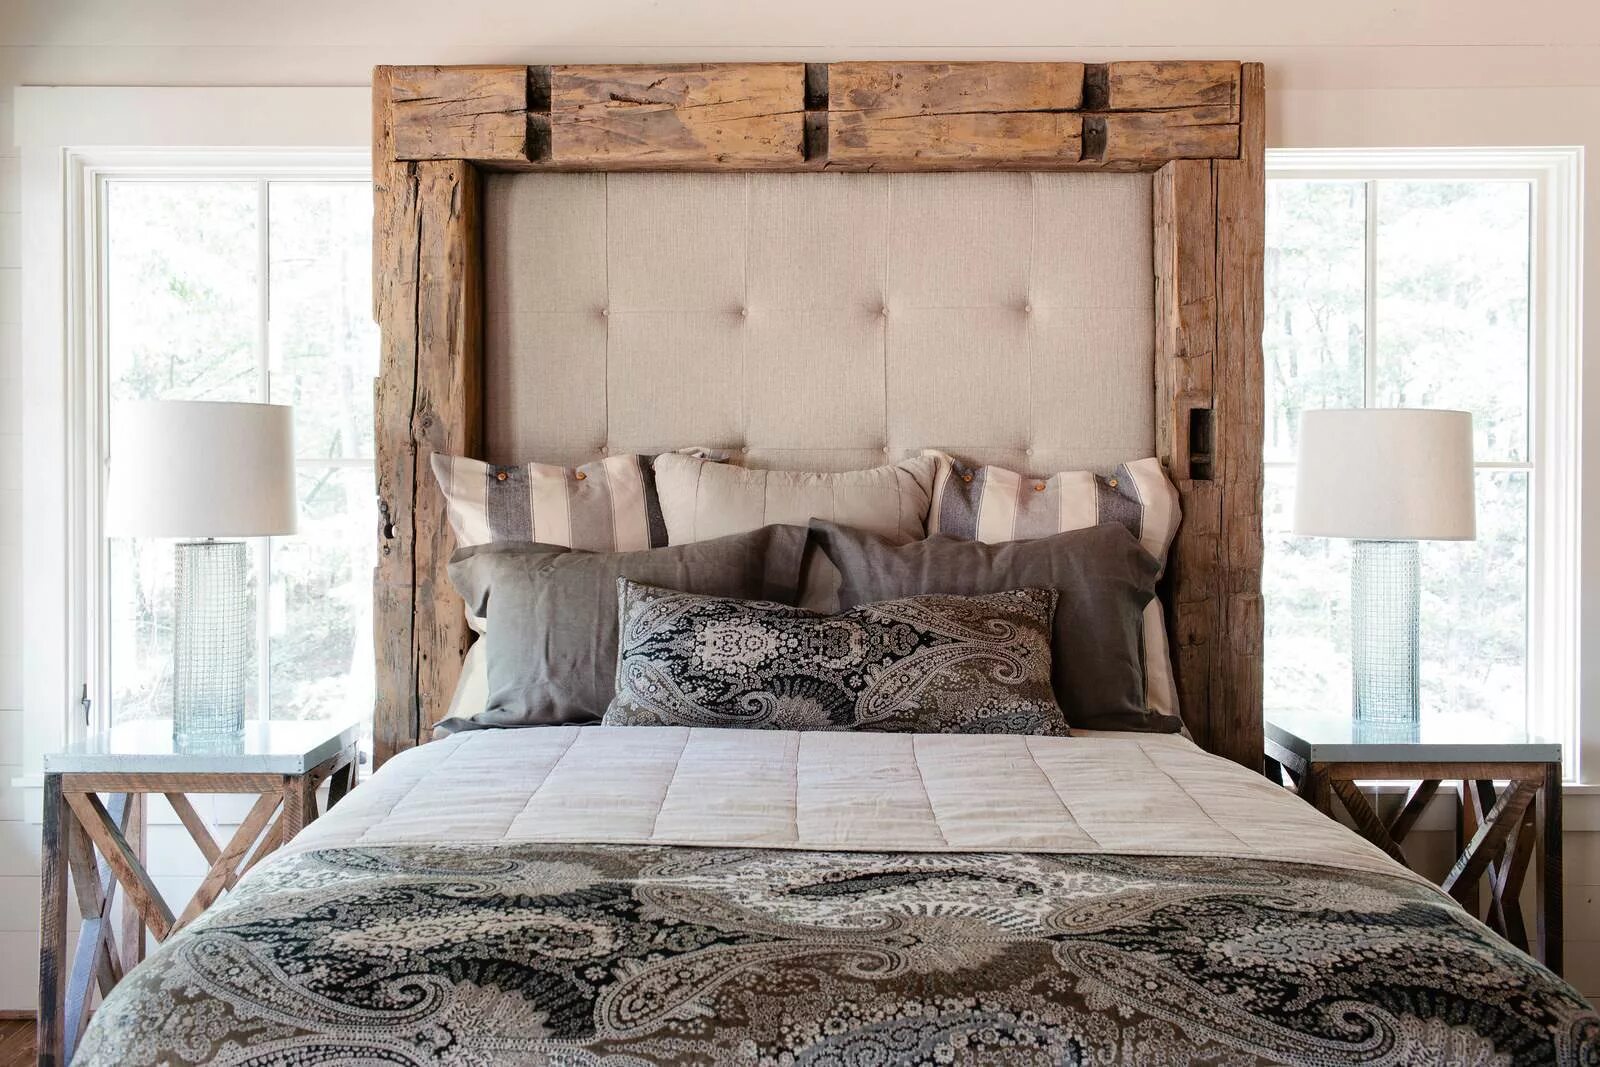 Изголовье кровати из дерева. Кровать с деревянным изголовьем. Необычное изголовье кровати. Изголовье деревянное в стиле лофт.